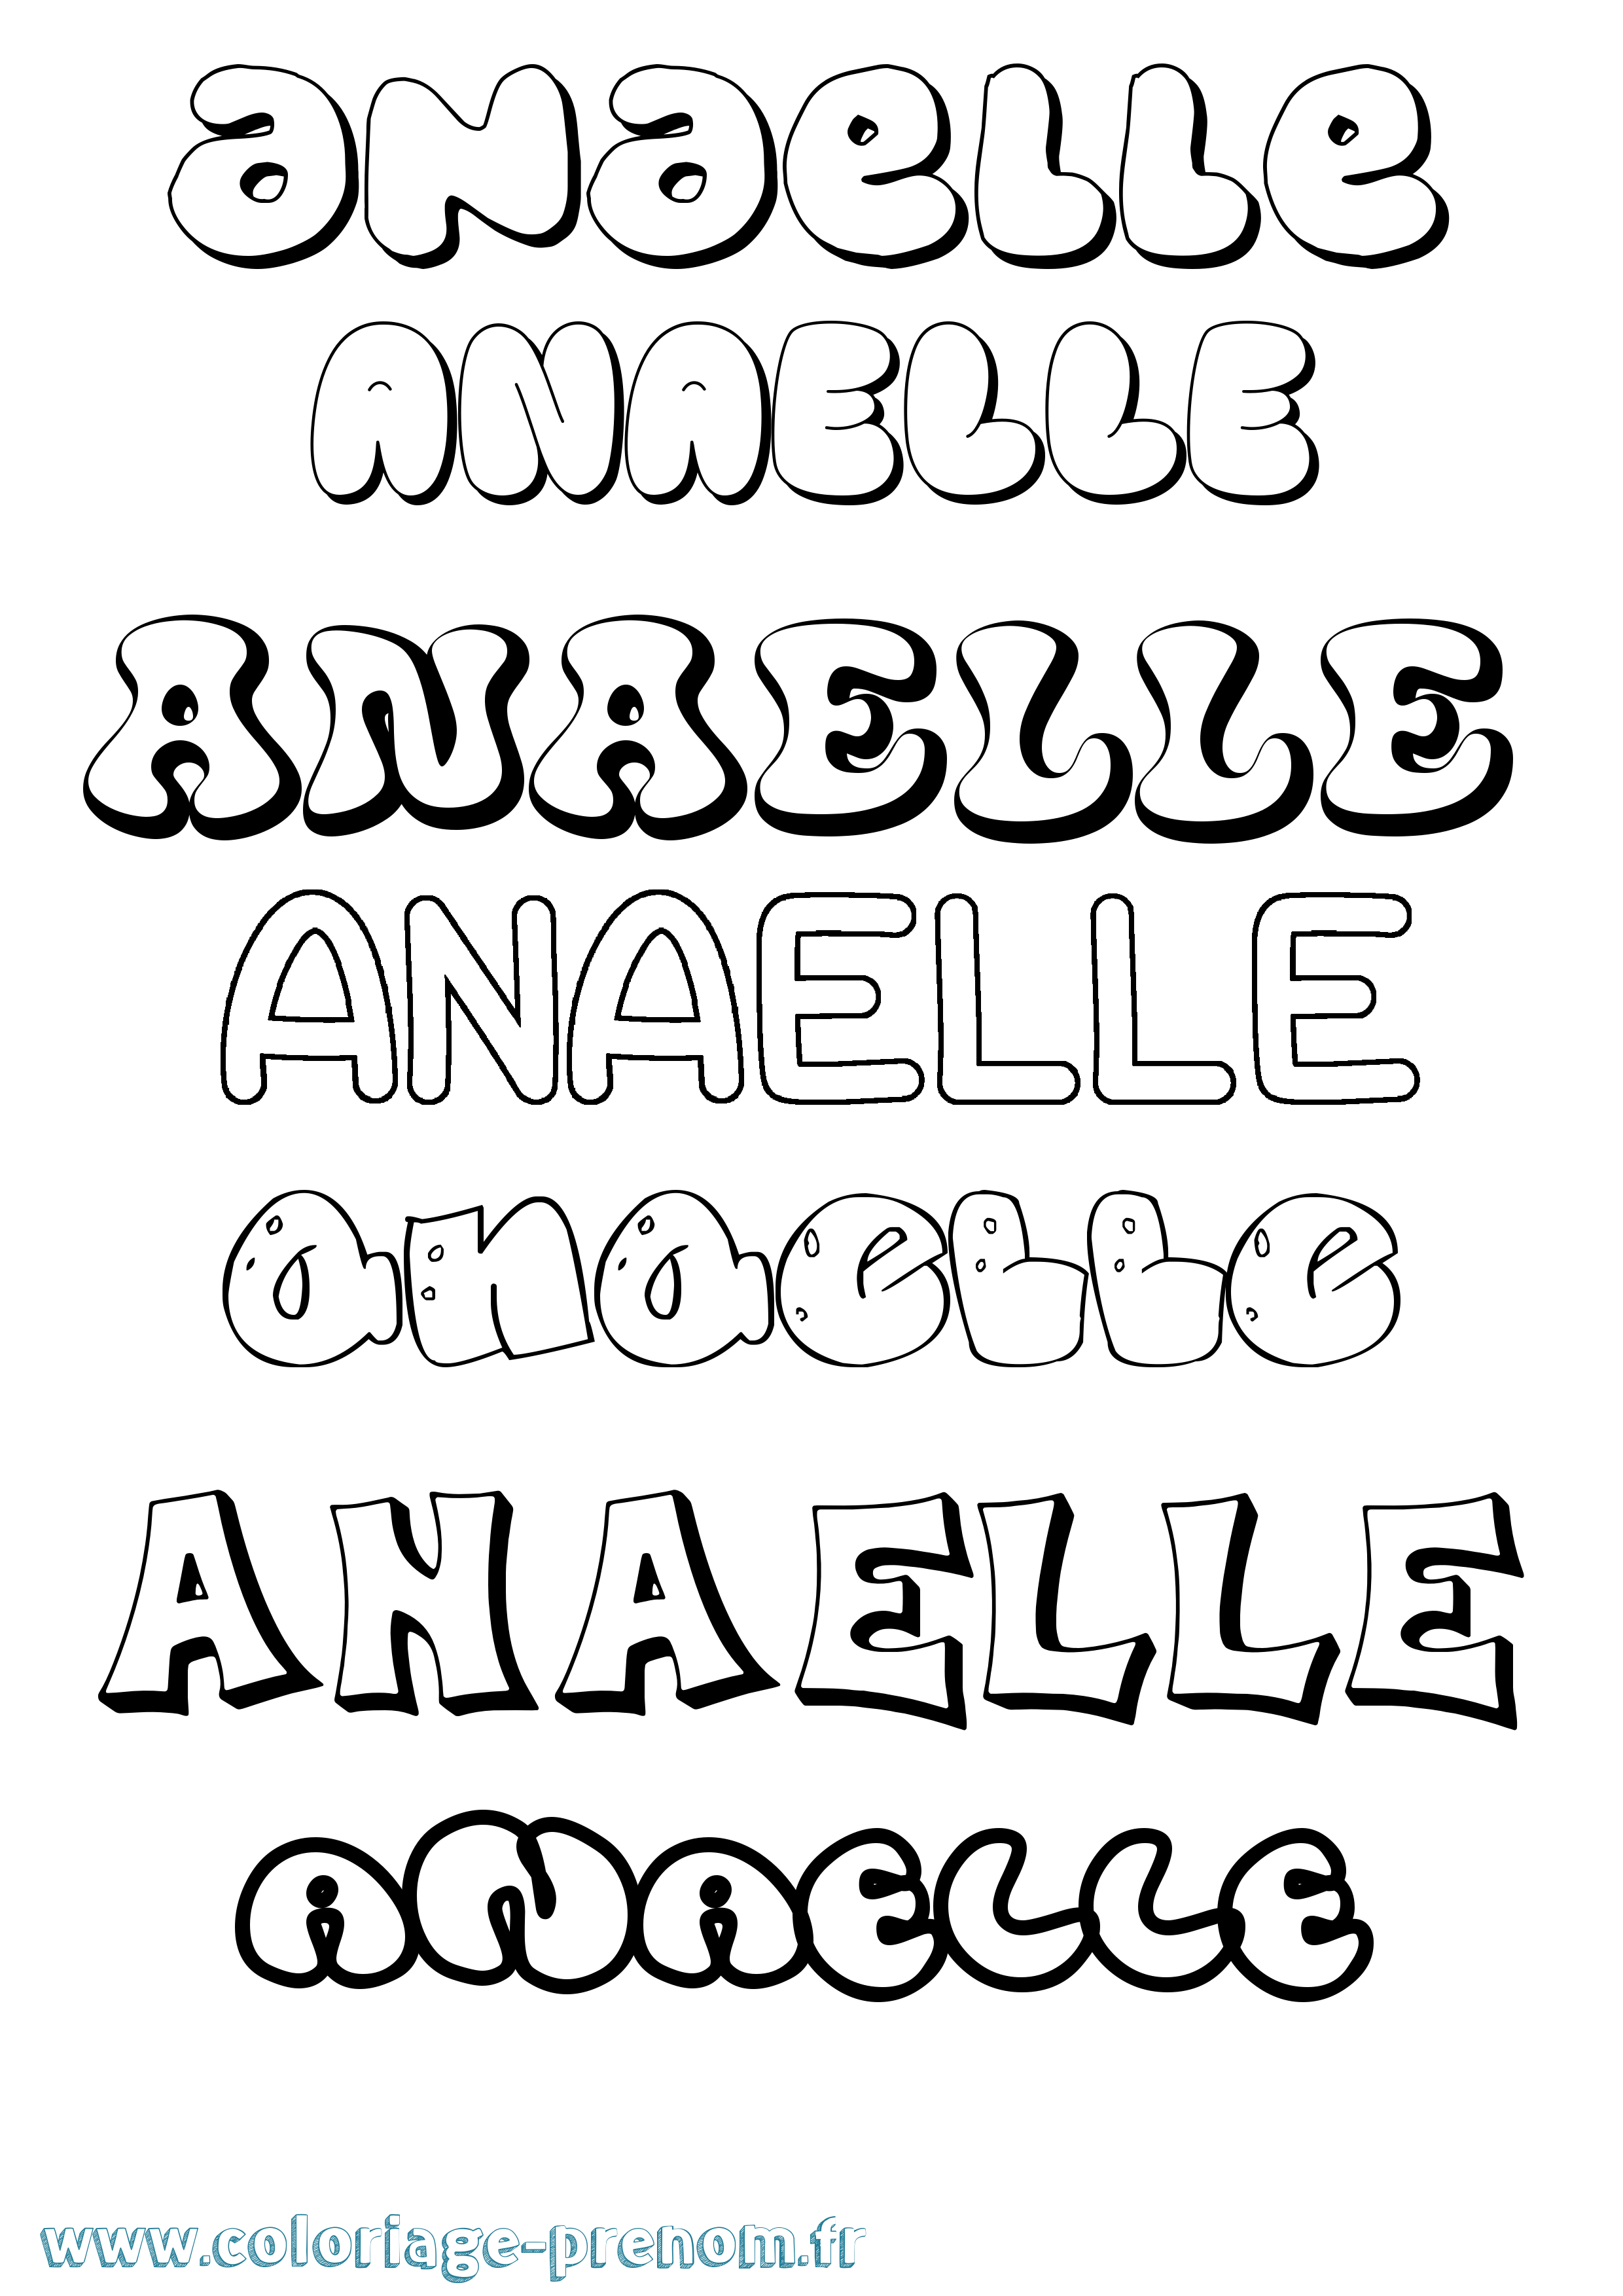 Coloriage prénom Anaelle Bubble